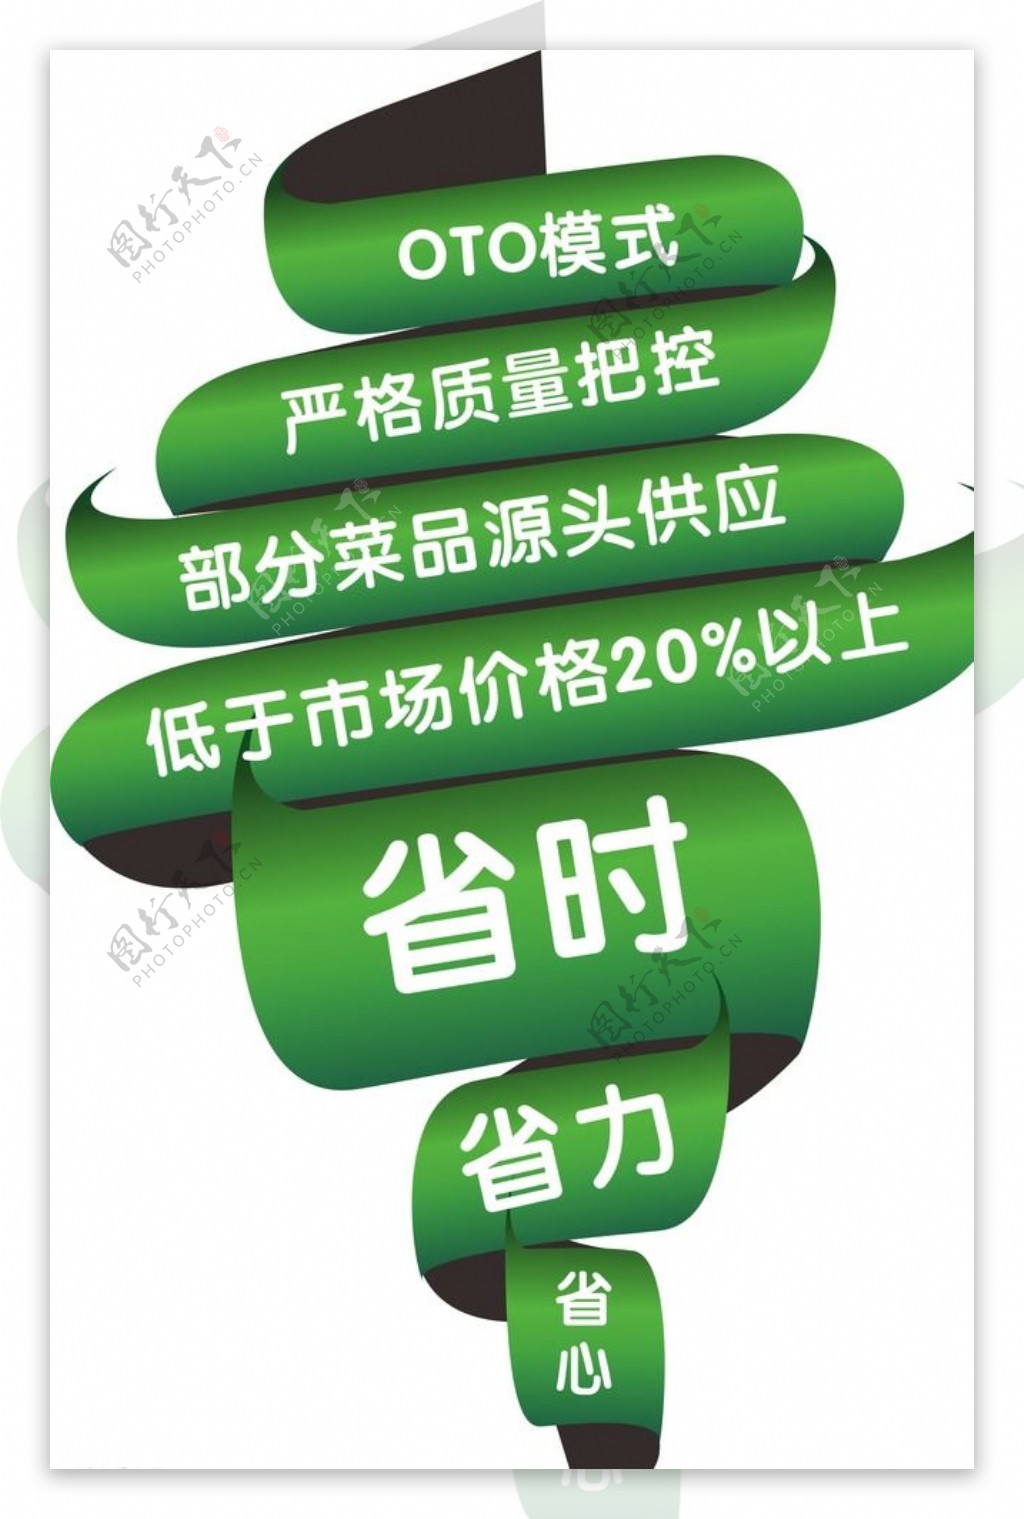 广告图片微信设计绿色